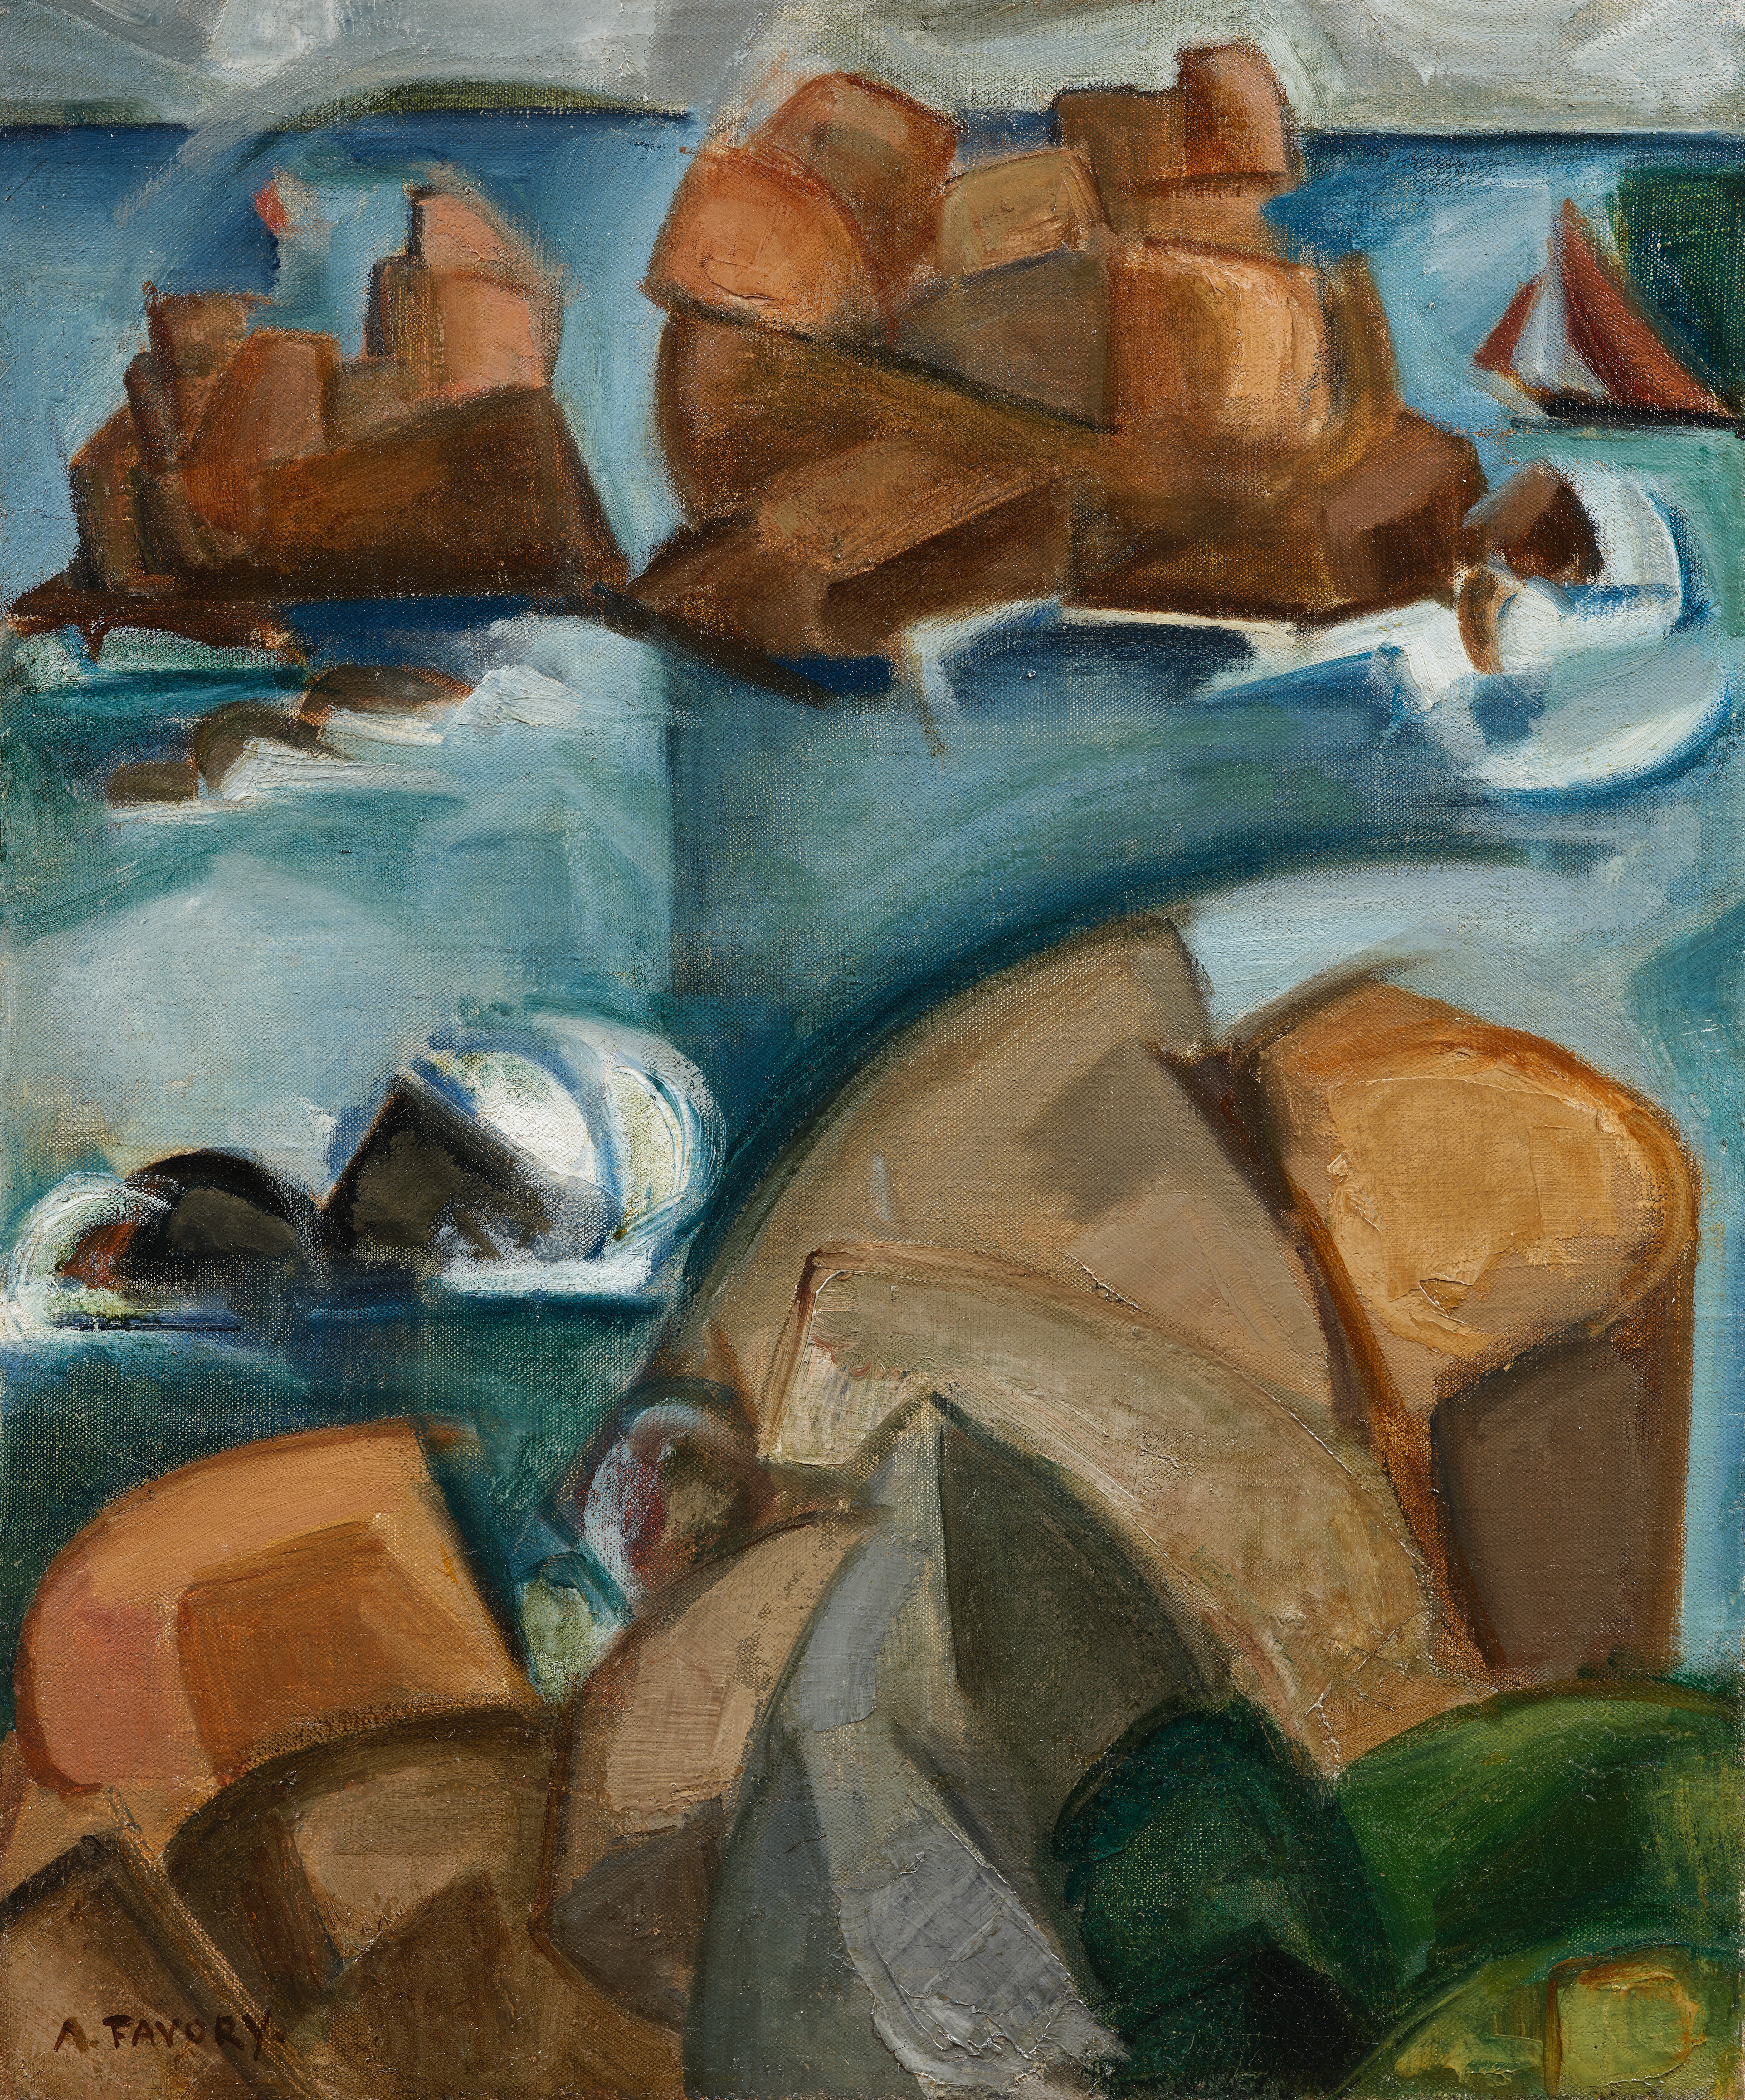 Les rochers, environs de Ploumanach - tableau de André Favory, vendu par la galerie Marek & Sons